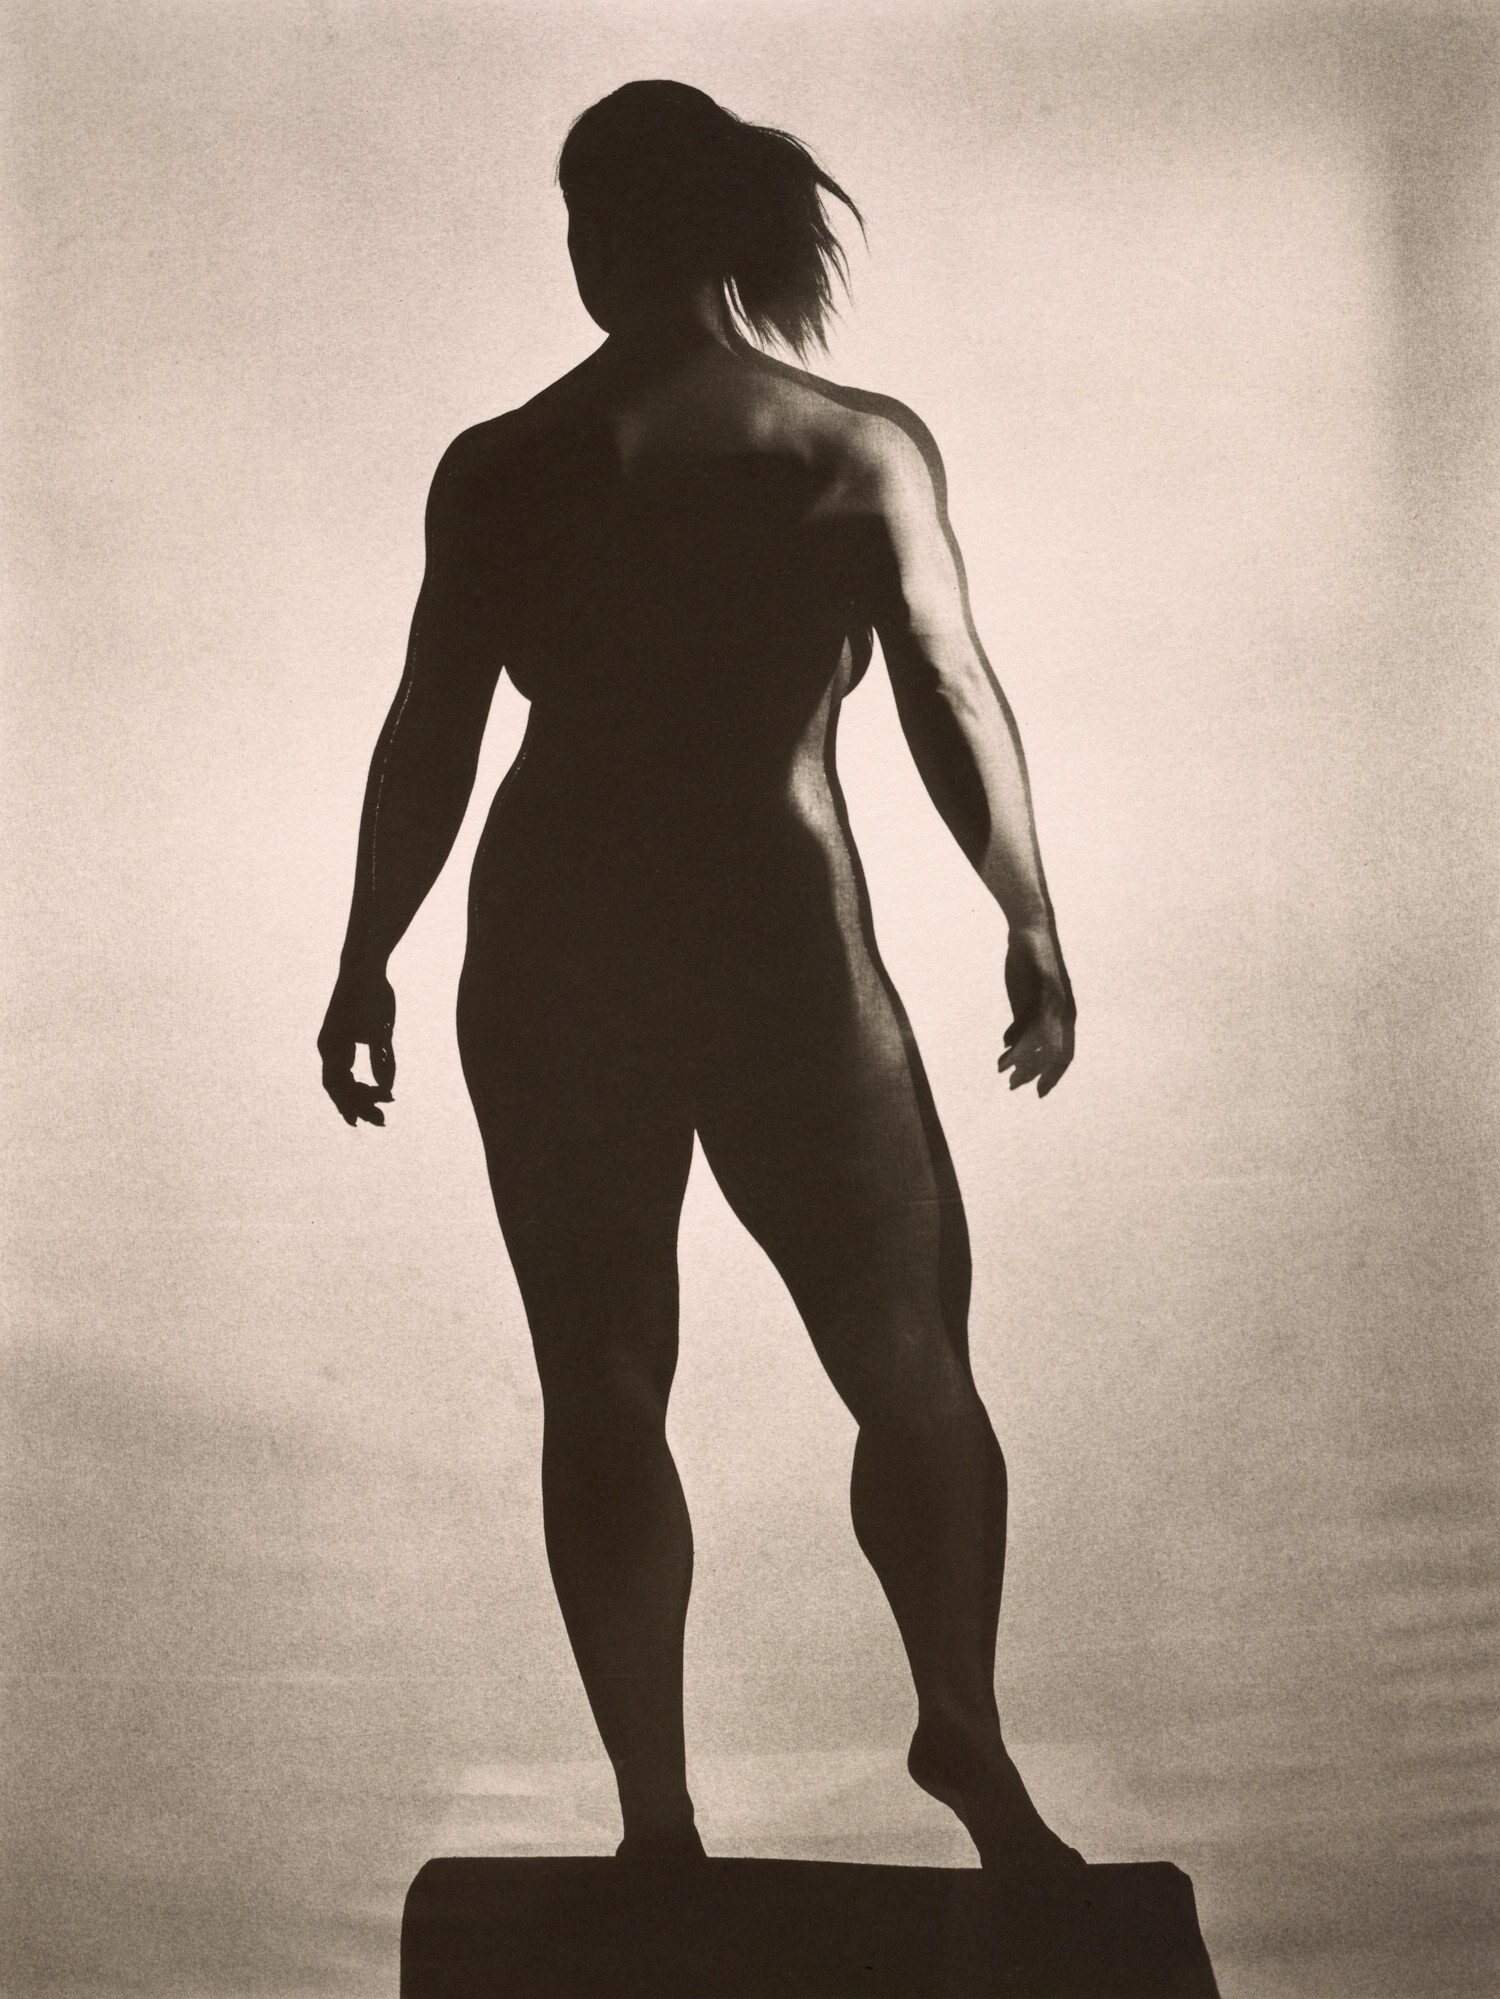 Крупная женщина (Нурсель), Нью-Йорк, 1997 г. Фотограф Ирвин Пенн